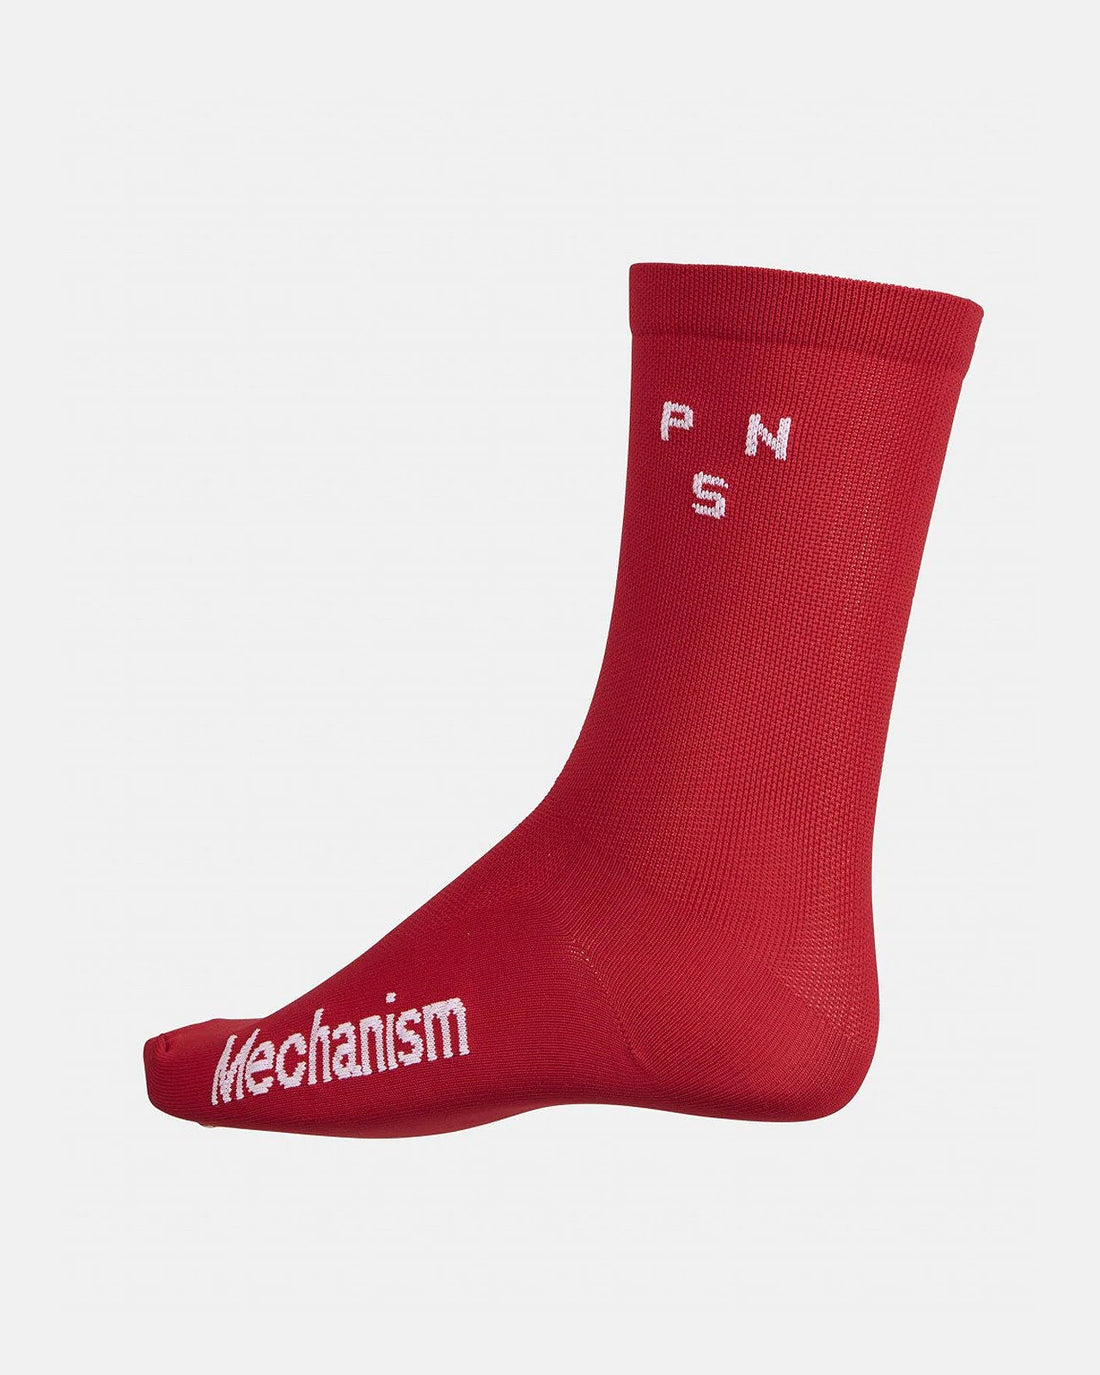 Mechanism Socks - Deep Red